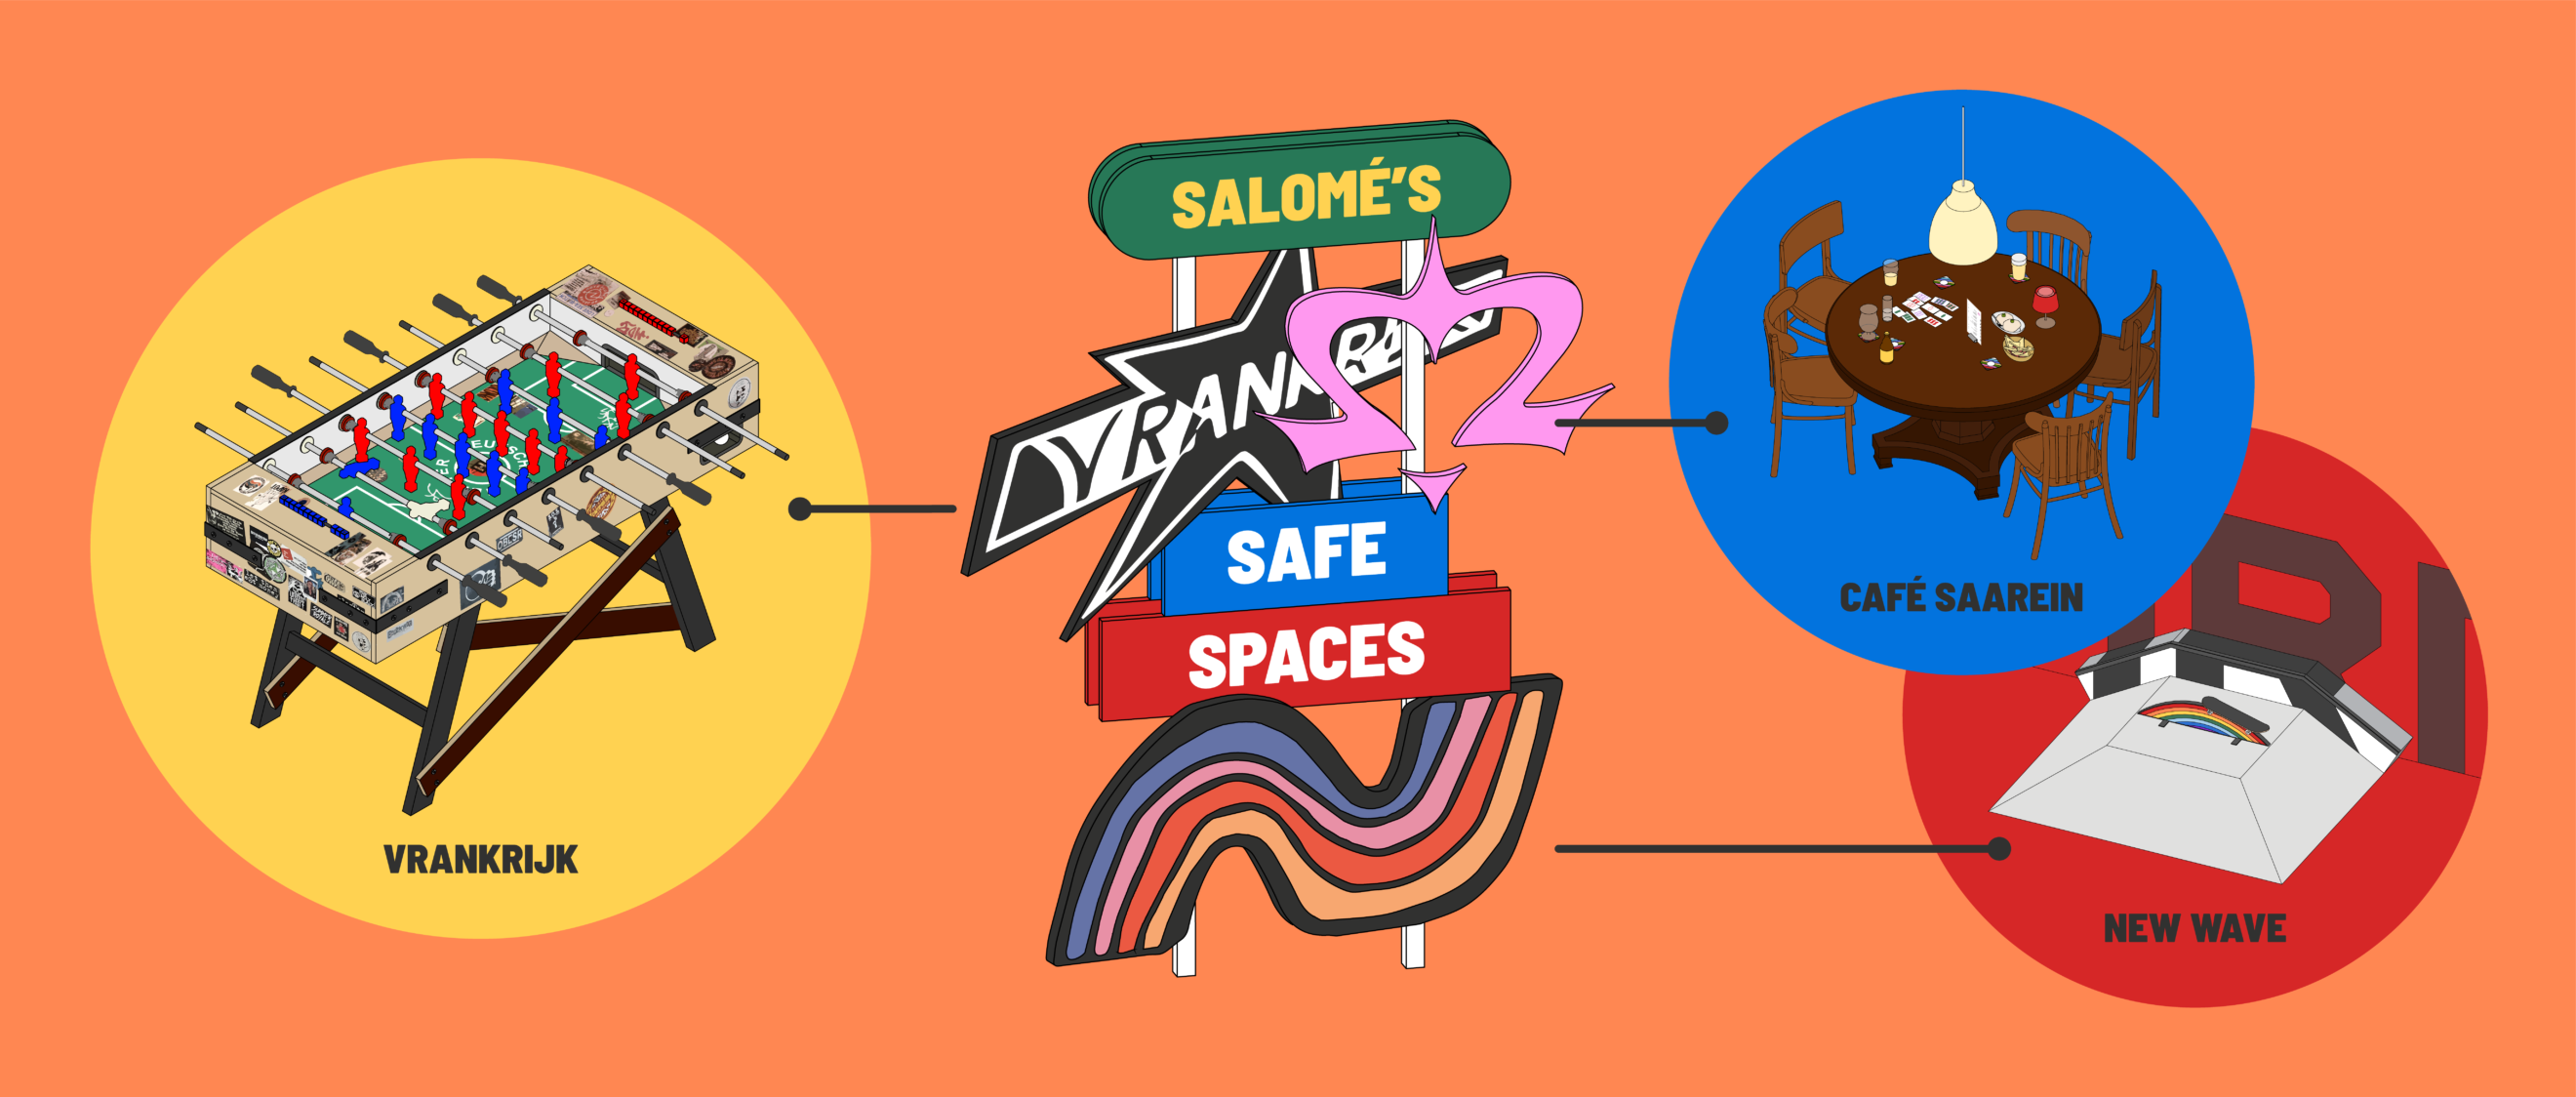 Salomé’s Safe Spaces